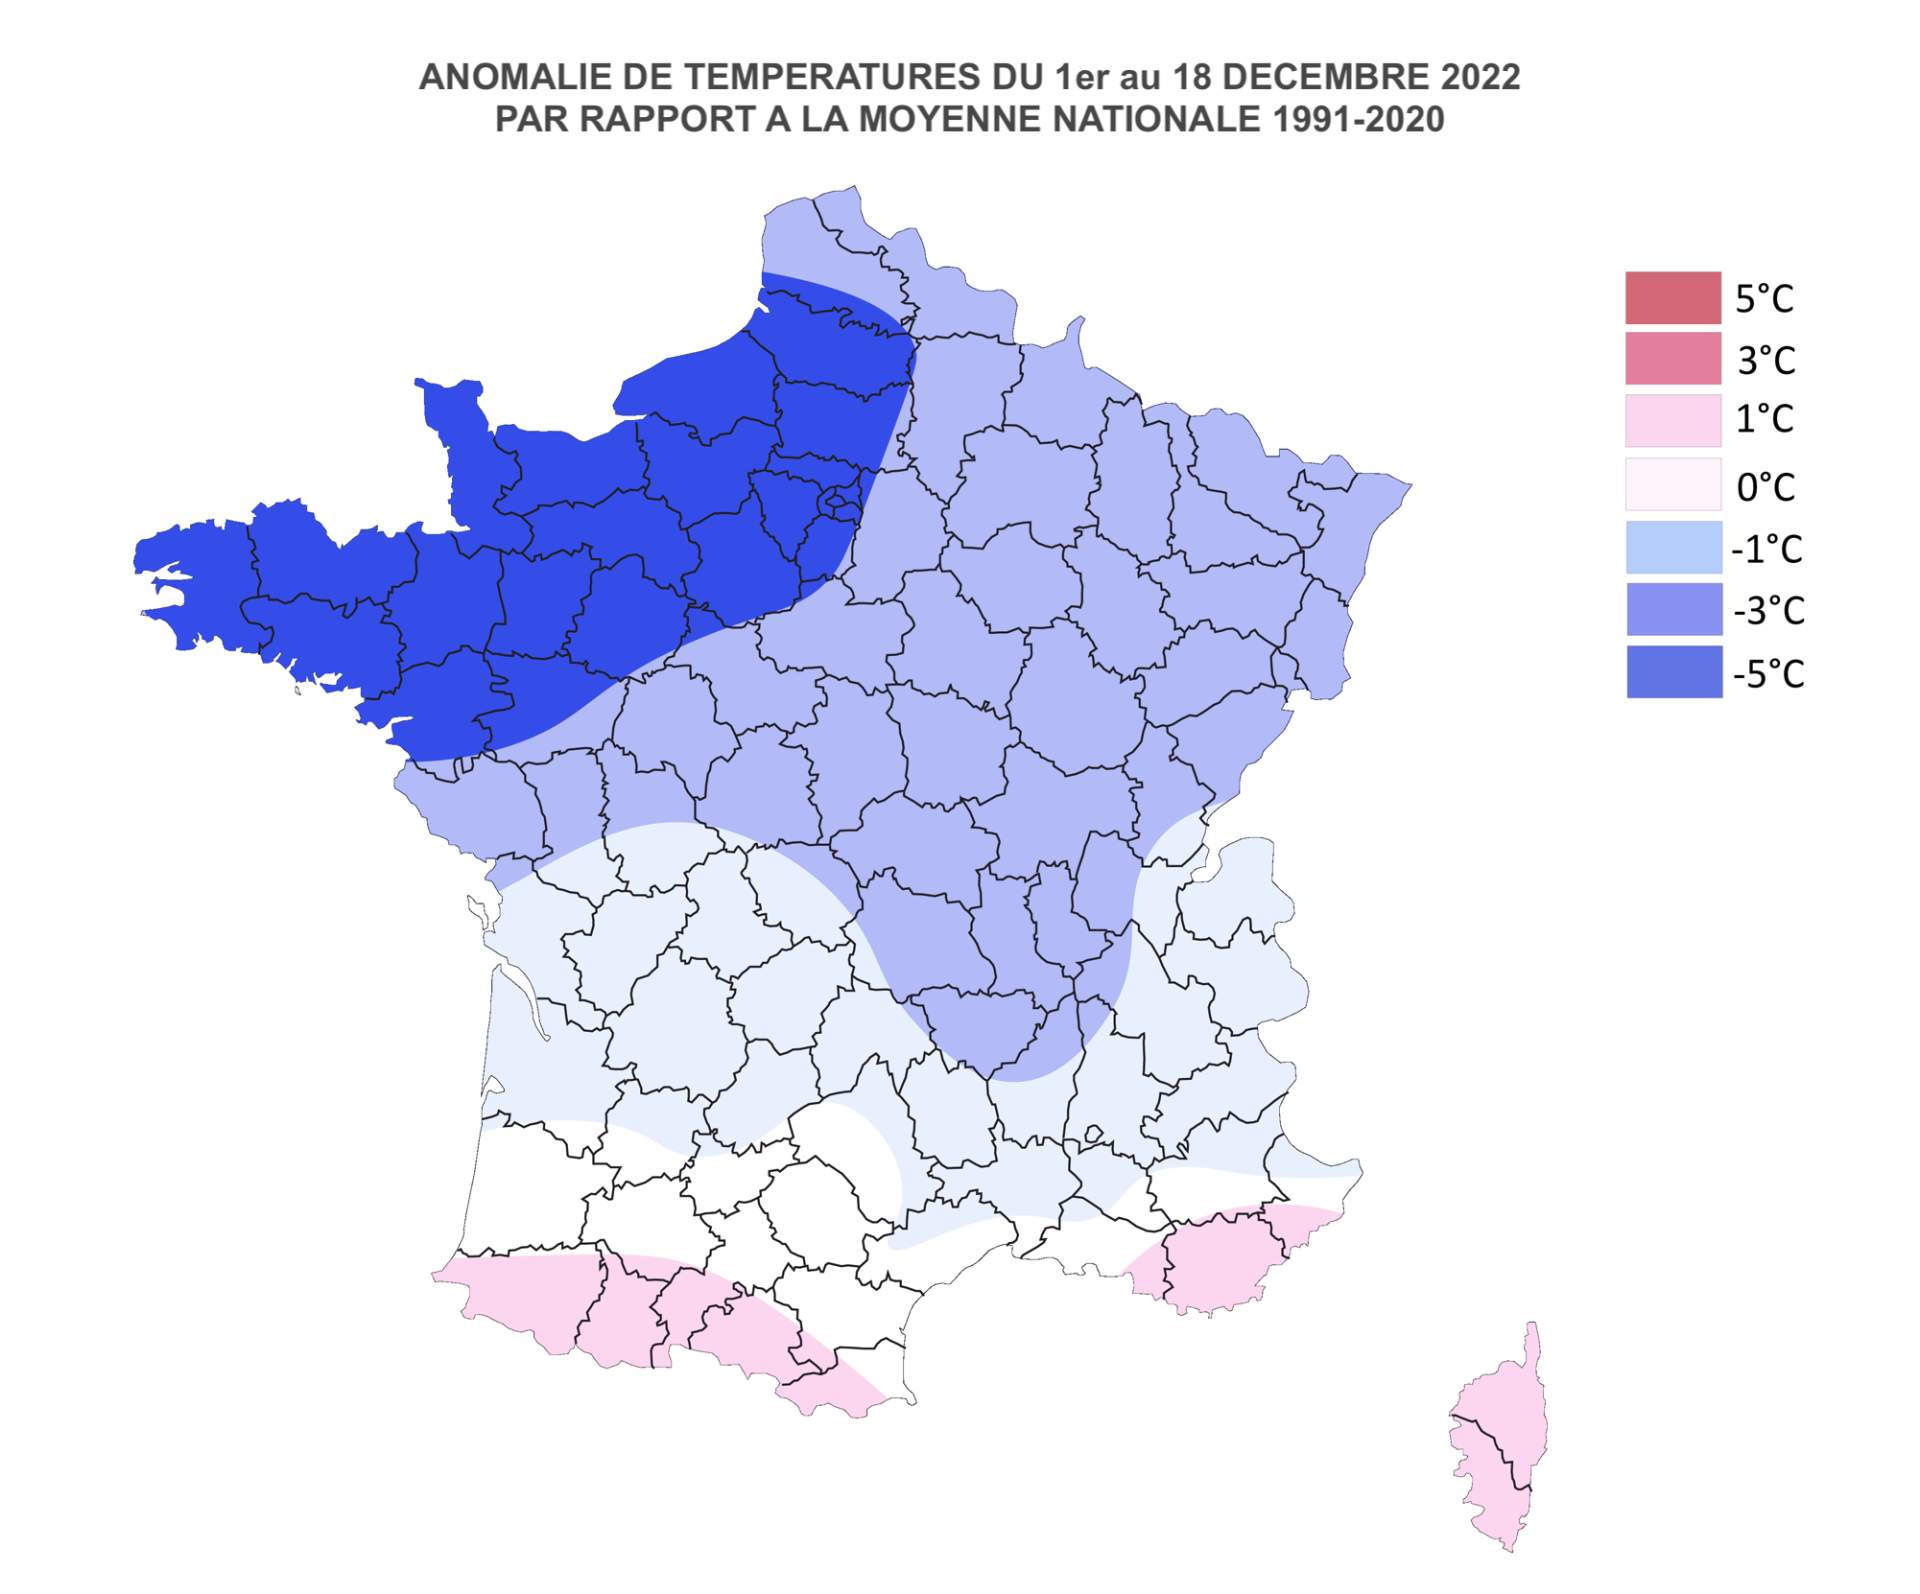 Fig. 2: Anomalie de températures du 1er au 18 décembre 2022 (c) Meteonews